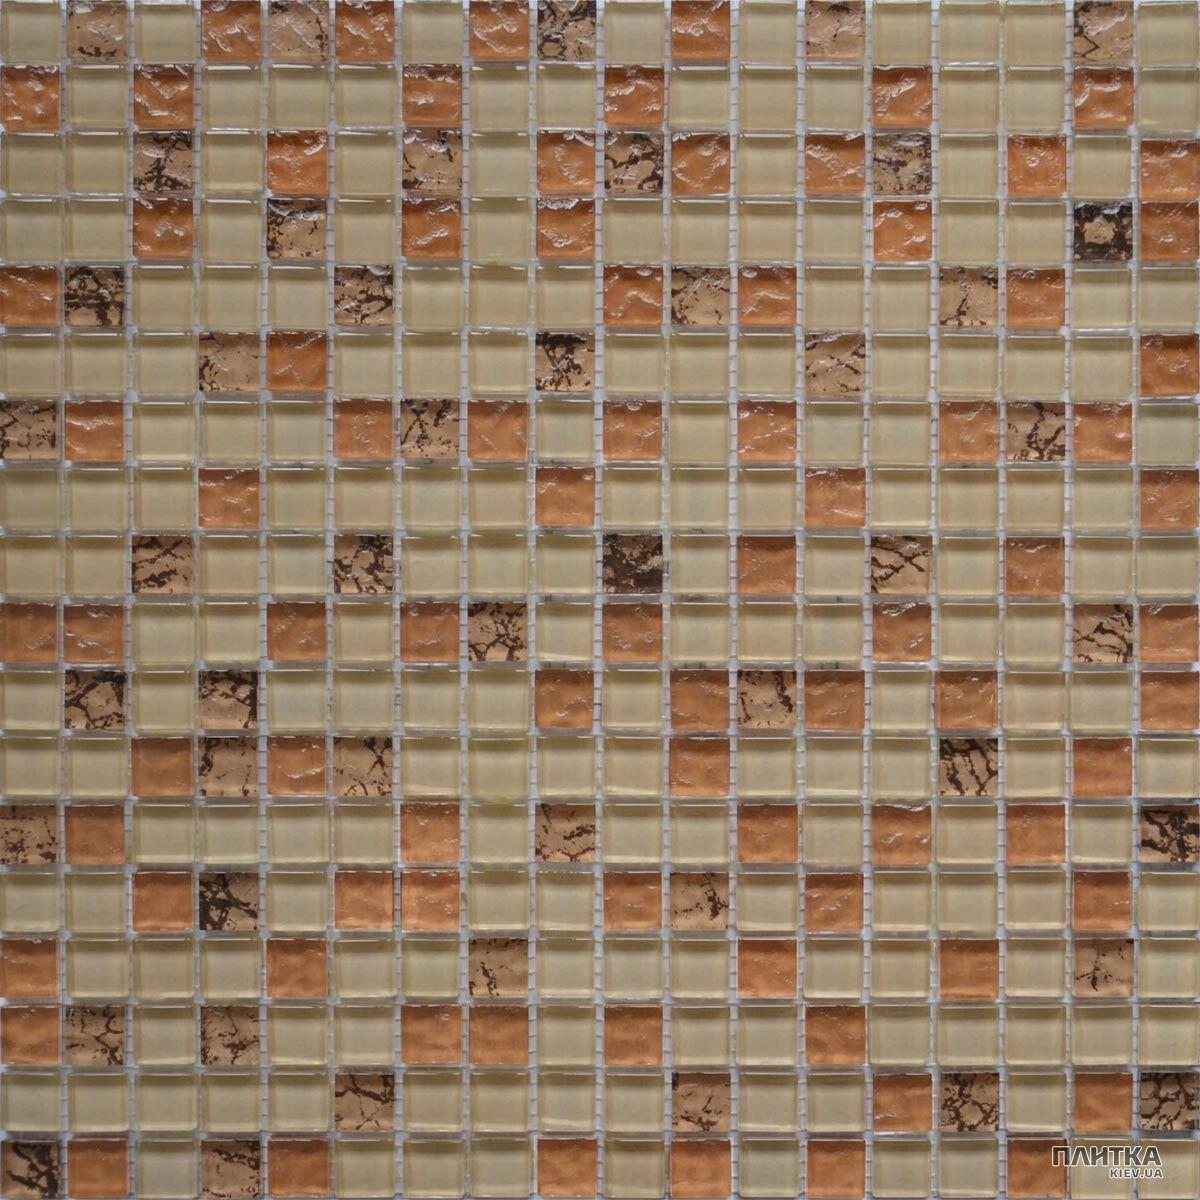 Мозаїка Grand Kerama 582 Мозаїка мікс бежевий-бронза рельєф-камінь бежевий,коричневий,бронзовий